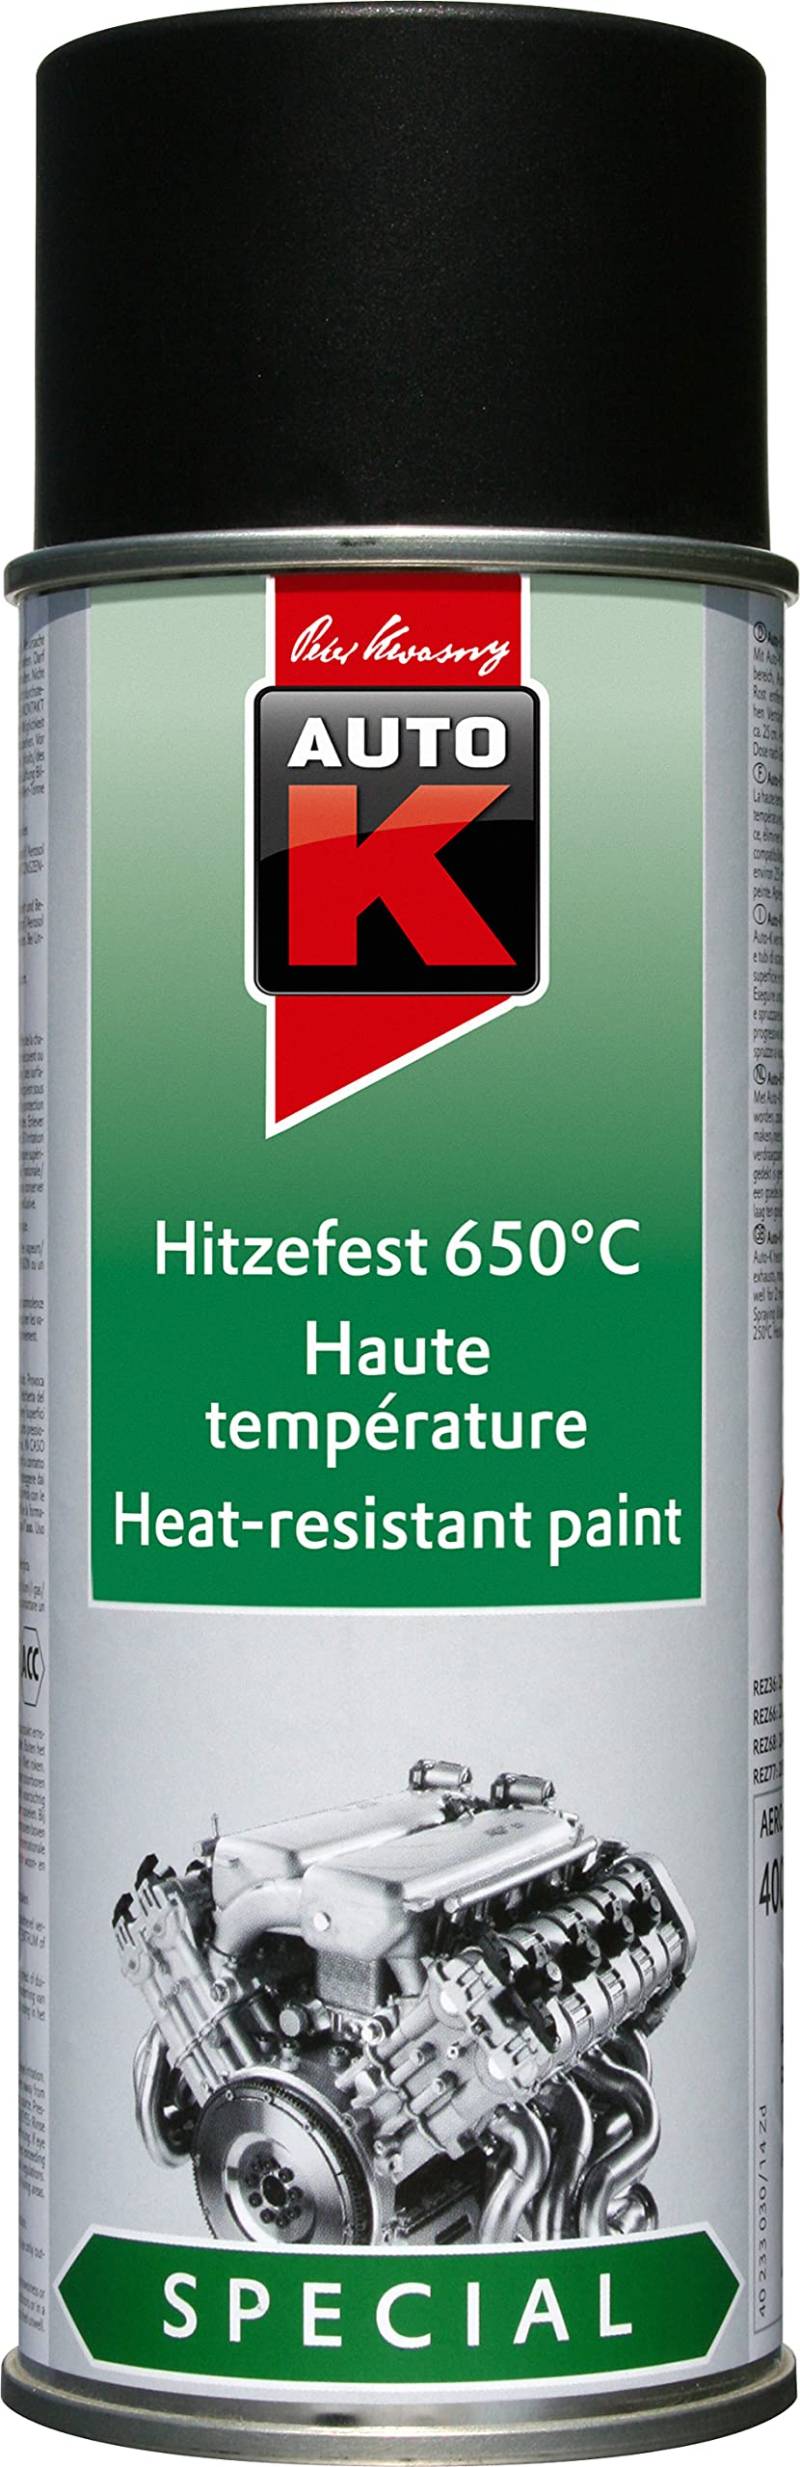 AutoK Special - Hitzefester Speziallack 650°C, 400 ml, schwarz -Hoch hitzebeständig bis 650°C, ideal für Motoren oder Grills von belton